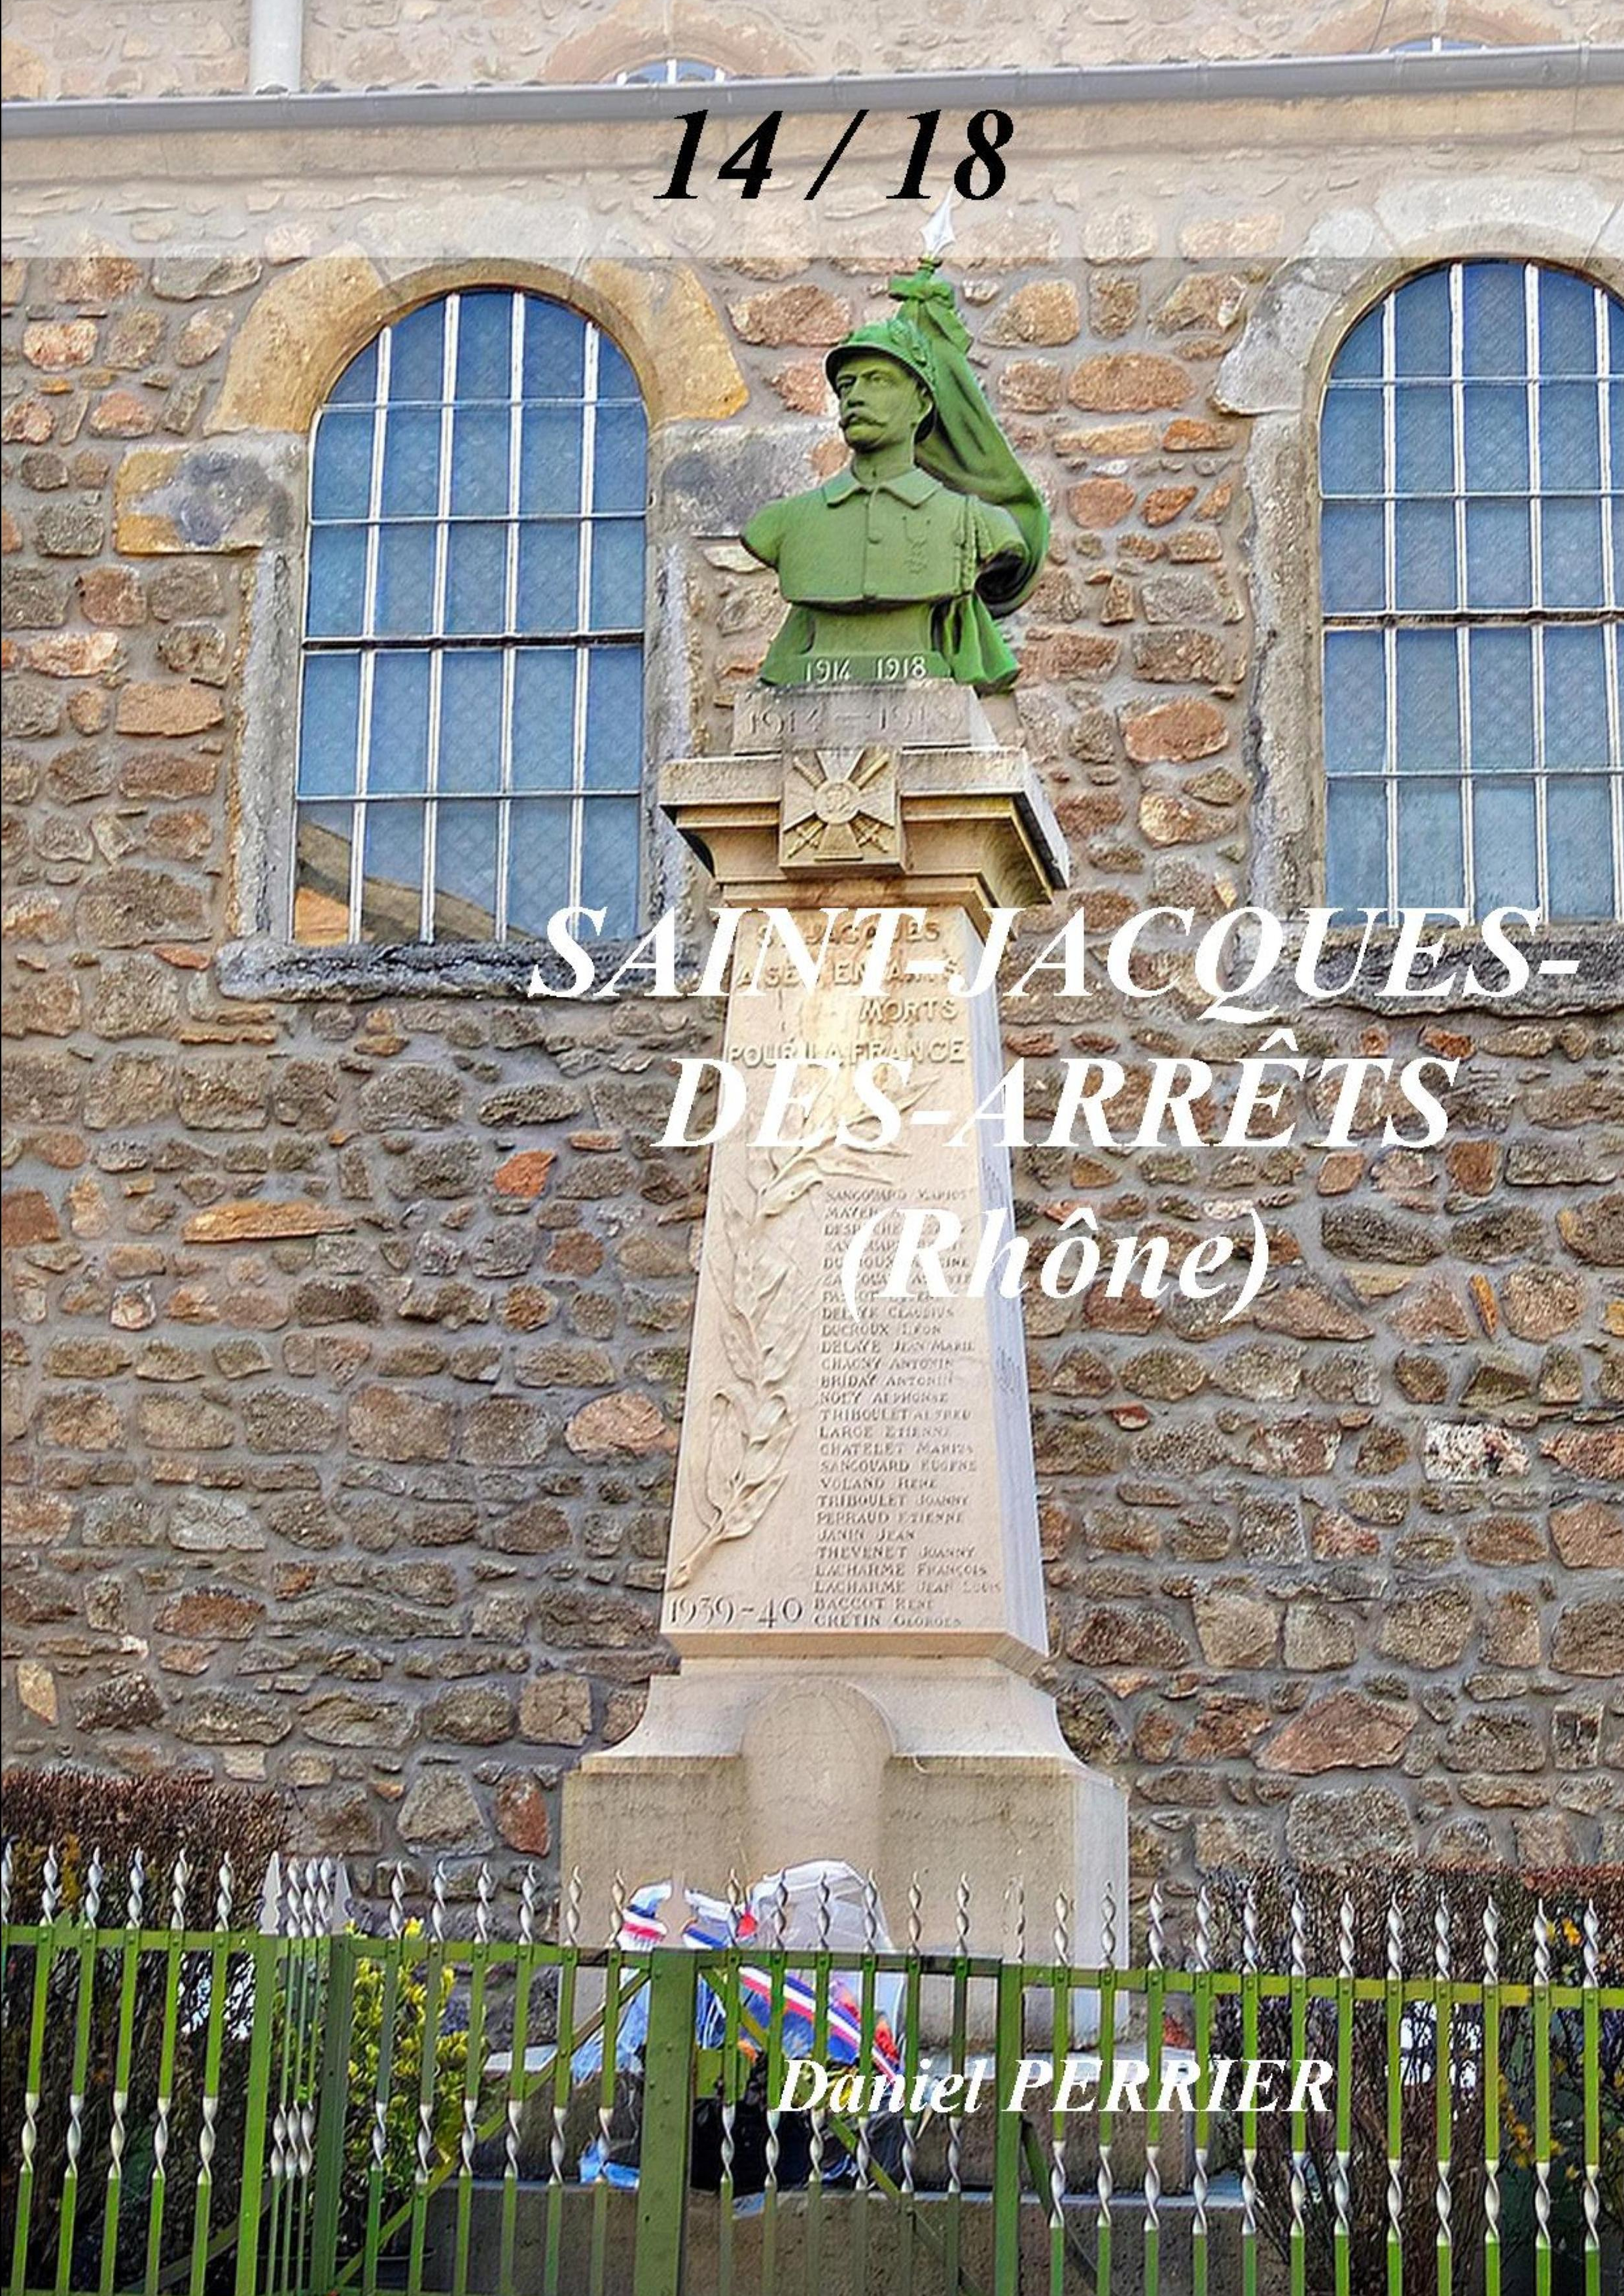 Le monument de St-Jacques-des-Arrêts